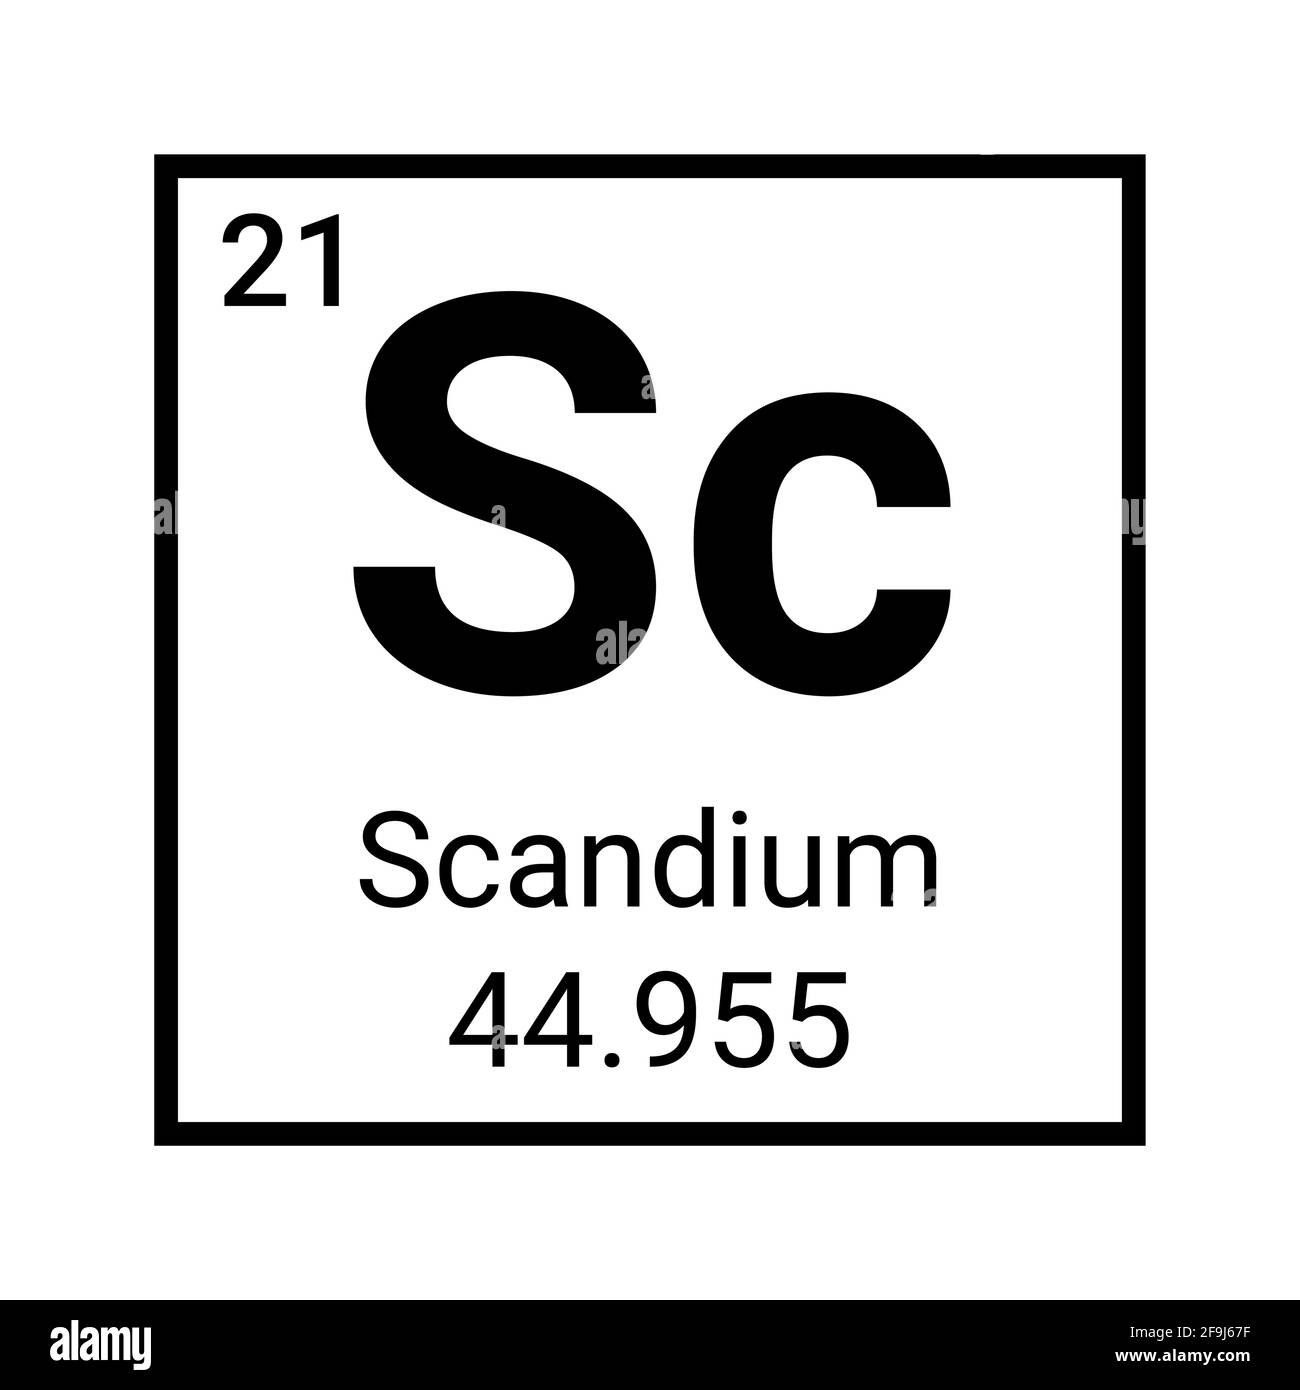 Scandium metal element symbol icon. Periodic table scandium element Stock Vector